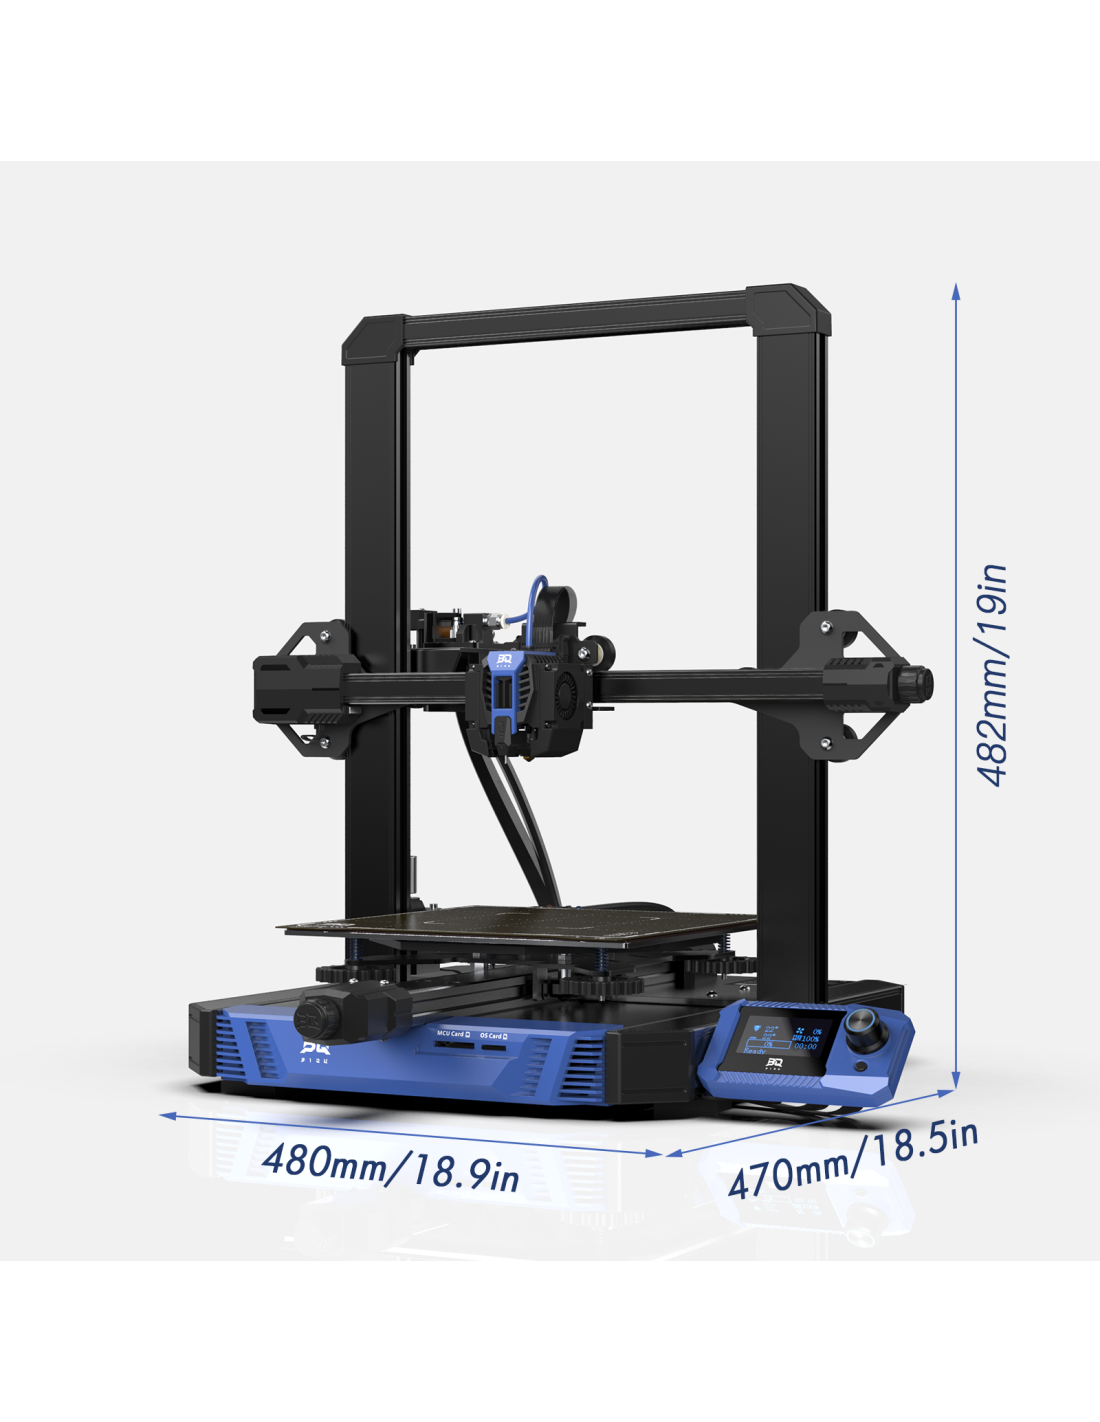 Impressora 3D de alta velocidade BIQU Hurakan Klipper